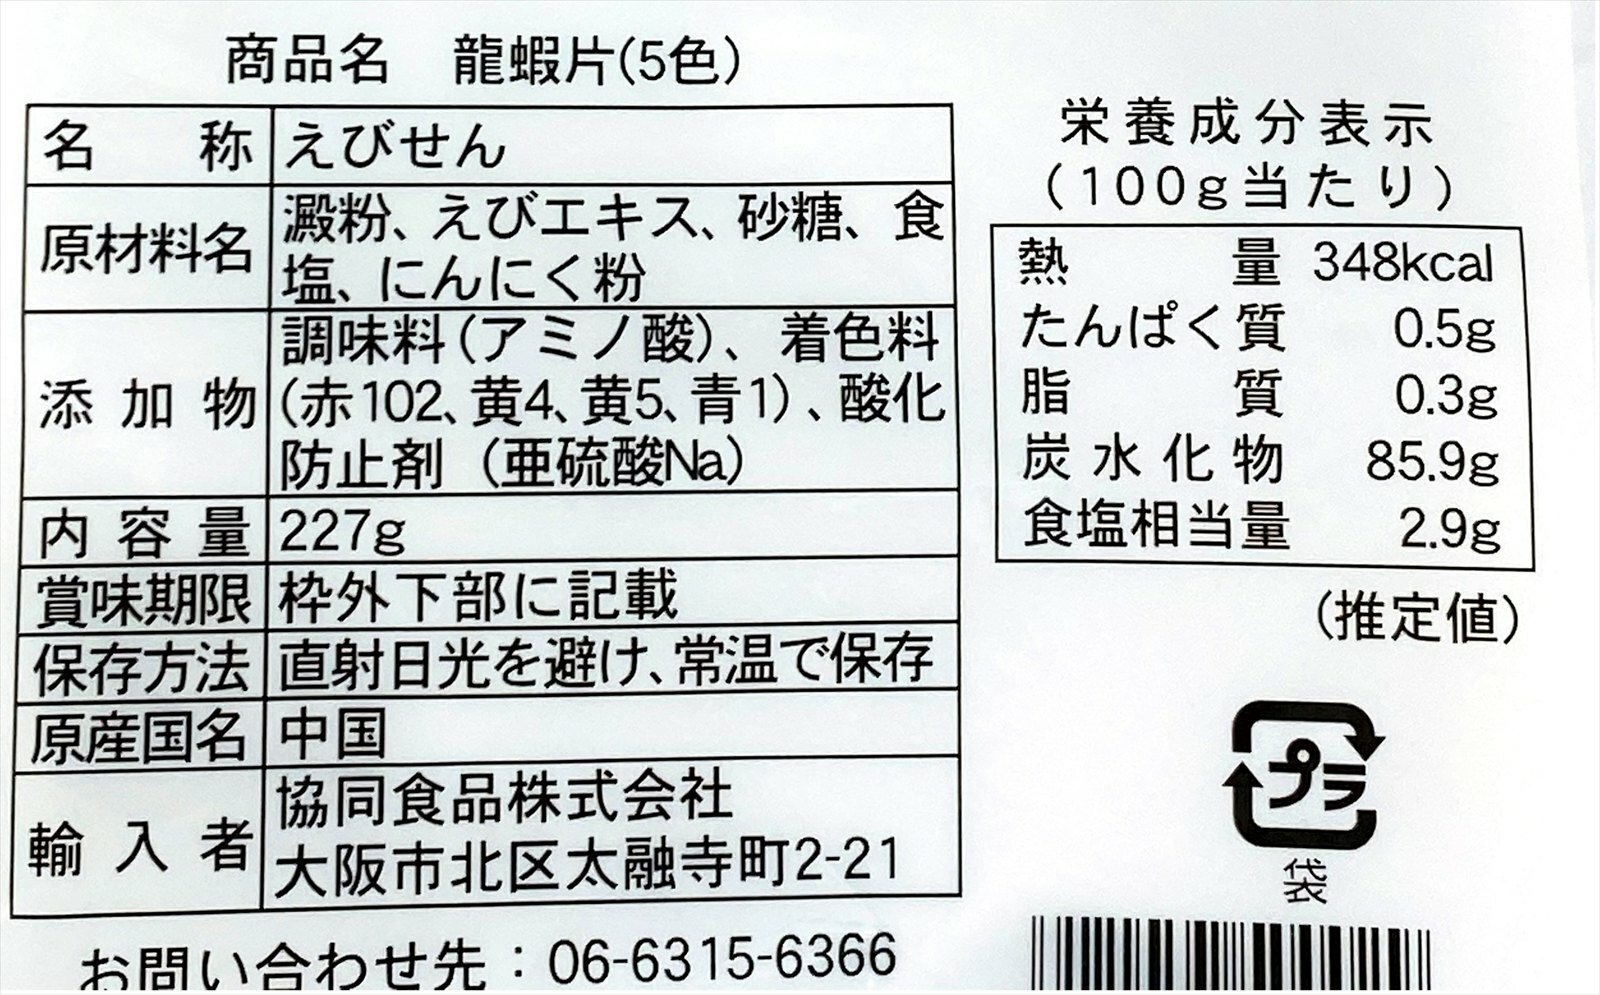 輸入者：共同食品 株式会社（大阪府大阪市北区）- 輸入食品の直輸入並びに卸売販売する会社です。